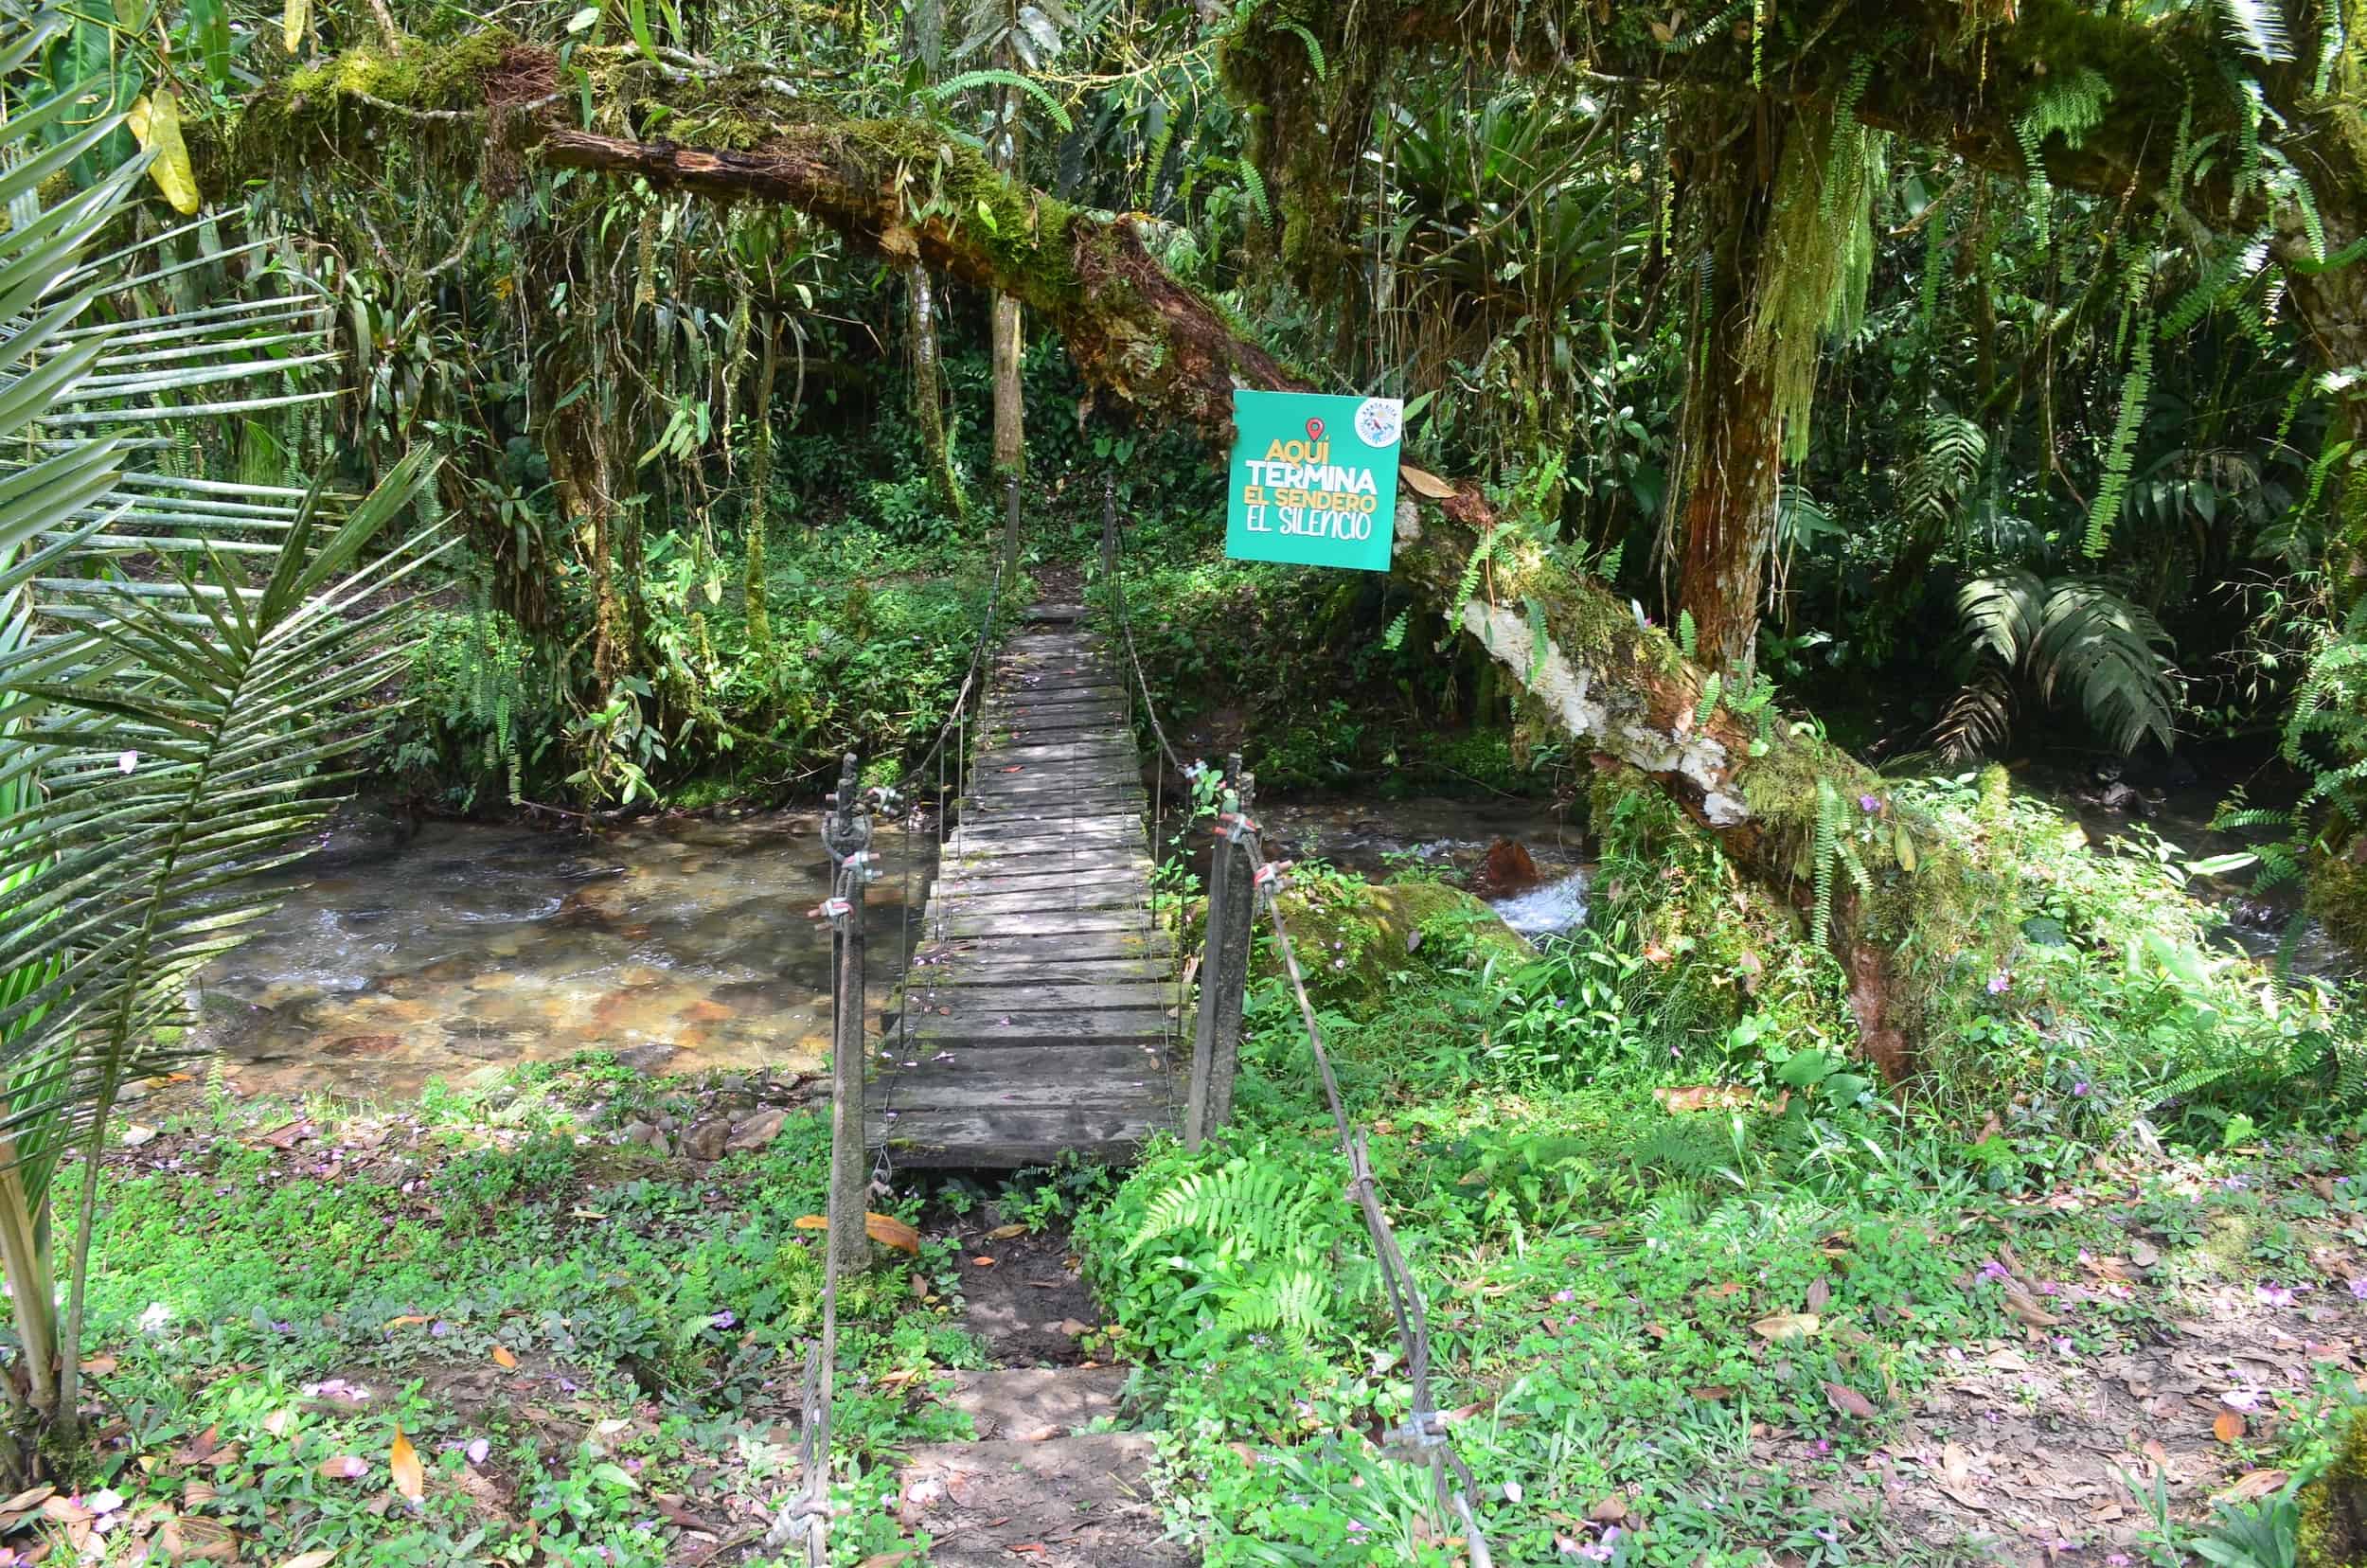 End of the El Silencio Trail at Santa Rita Nature Reserve in Boquía, Salento, Quindío, Colombia